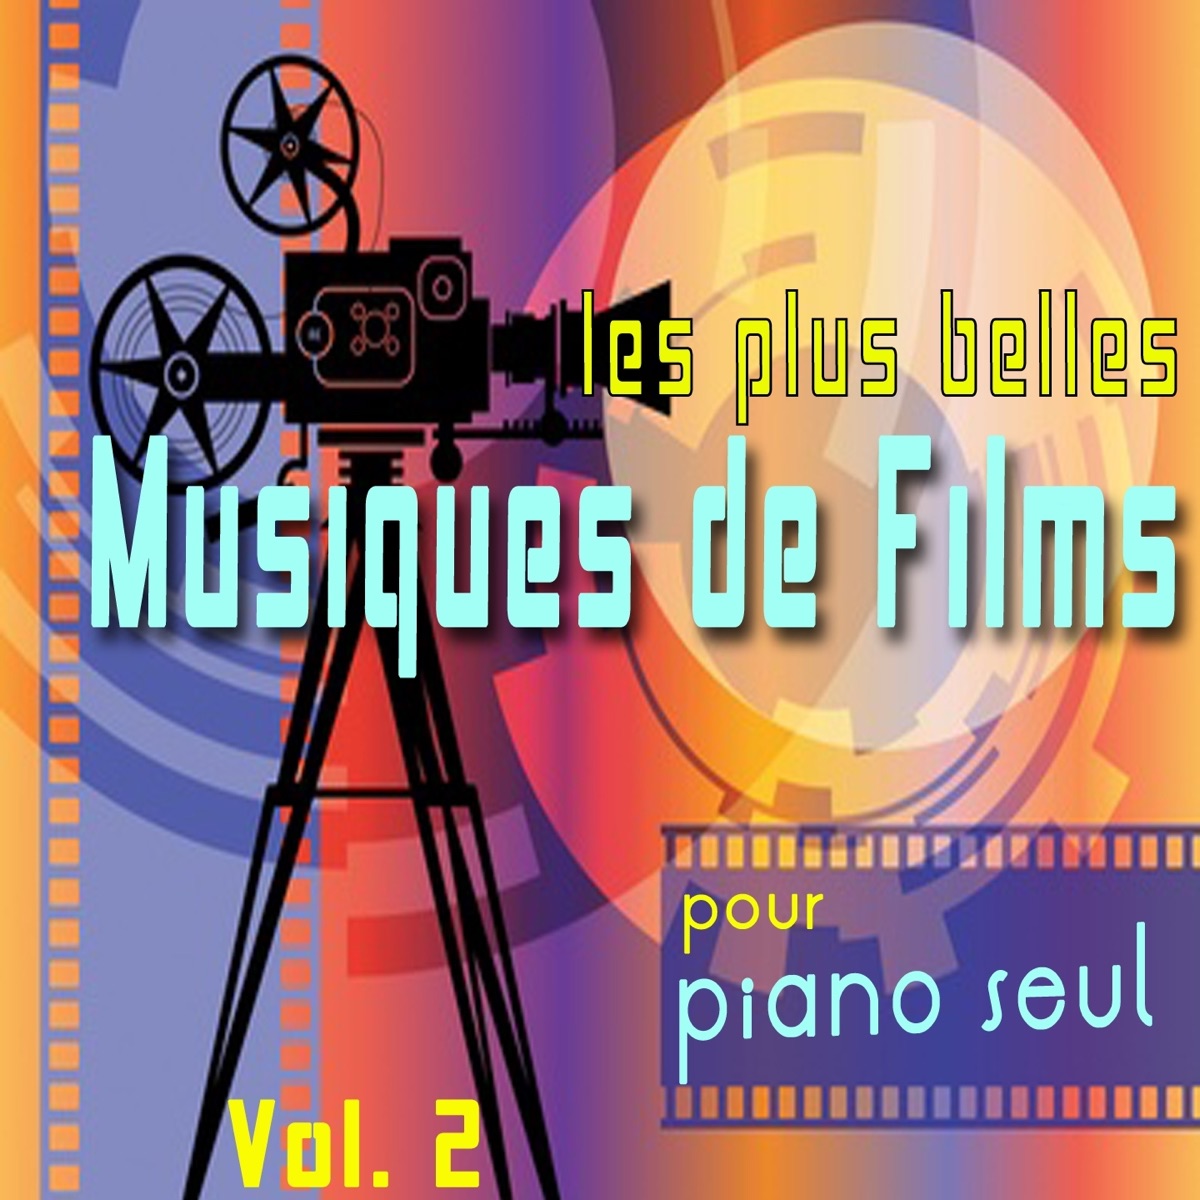 Les plus belles musiques de films pour piano seul, vol. 1 par Michele  Garruti & Giampaolo Pasquile sur Apple Music